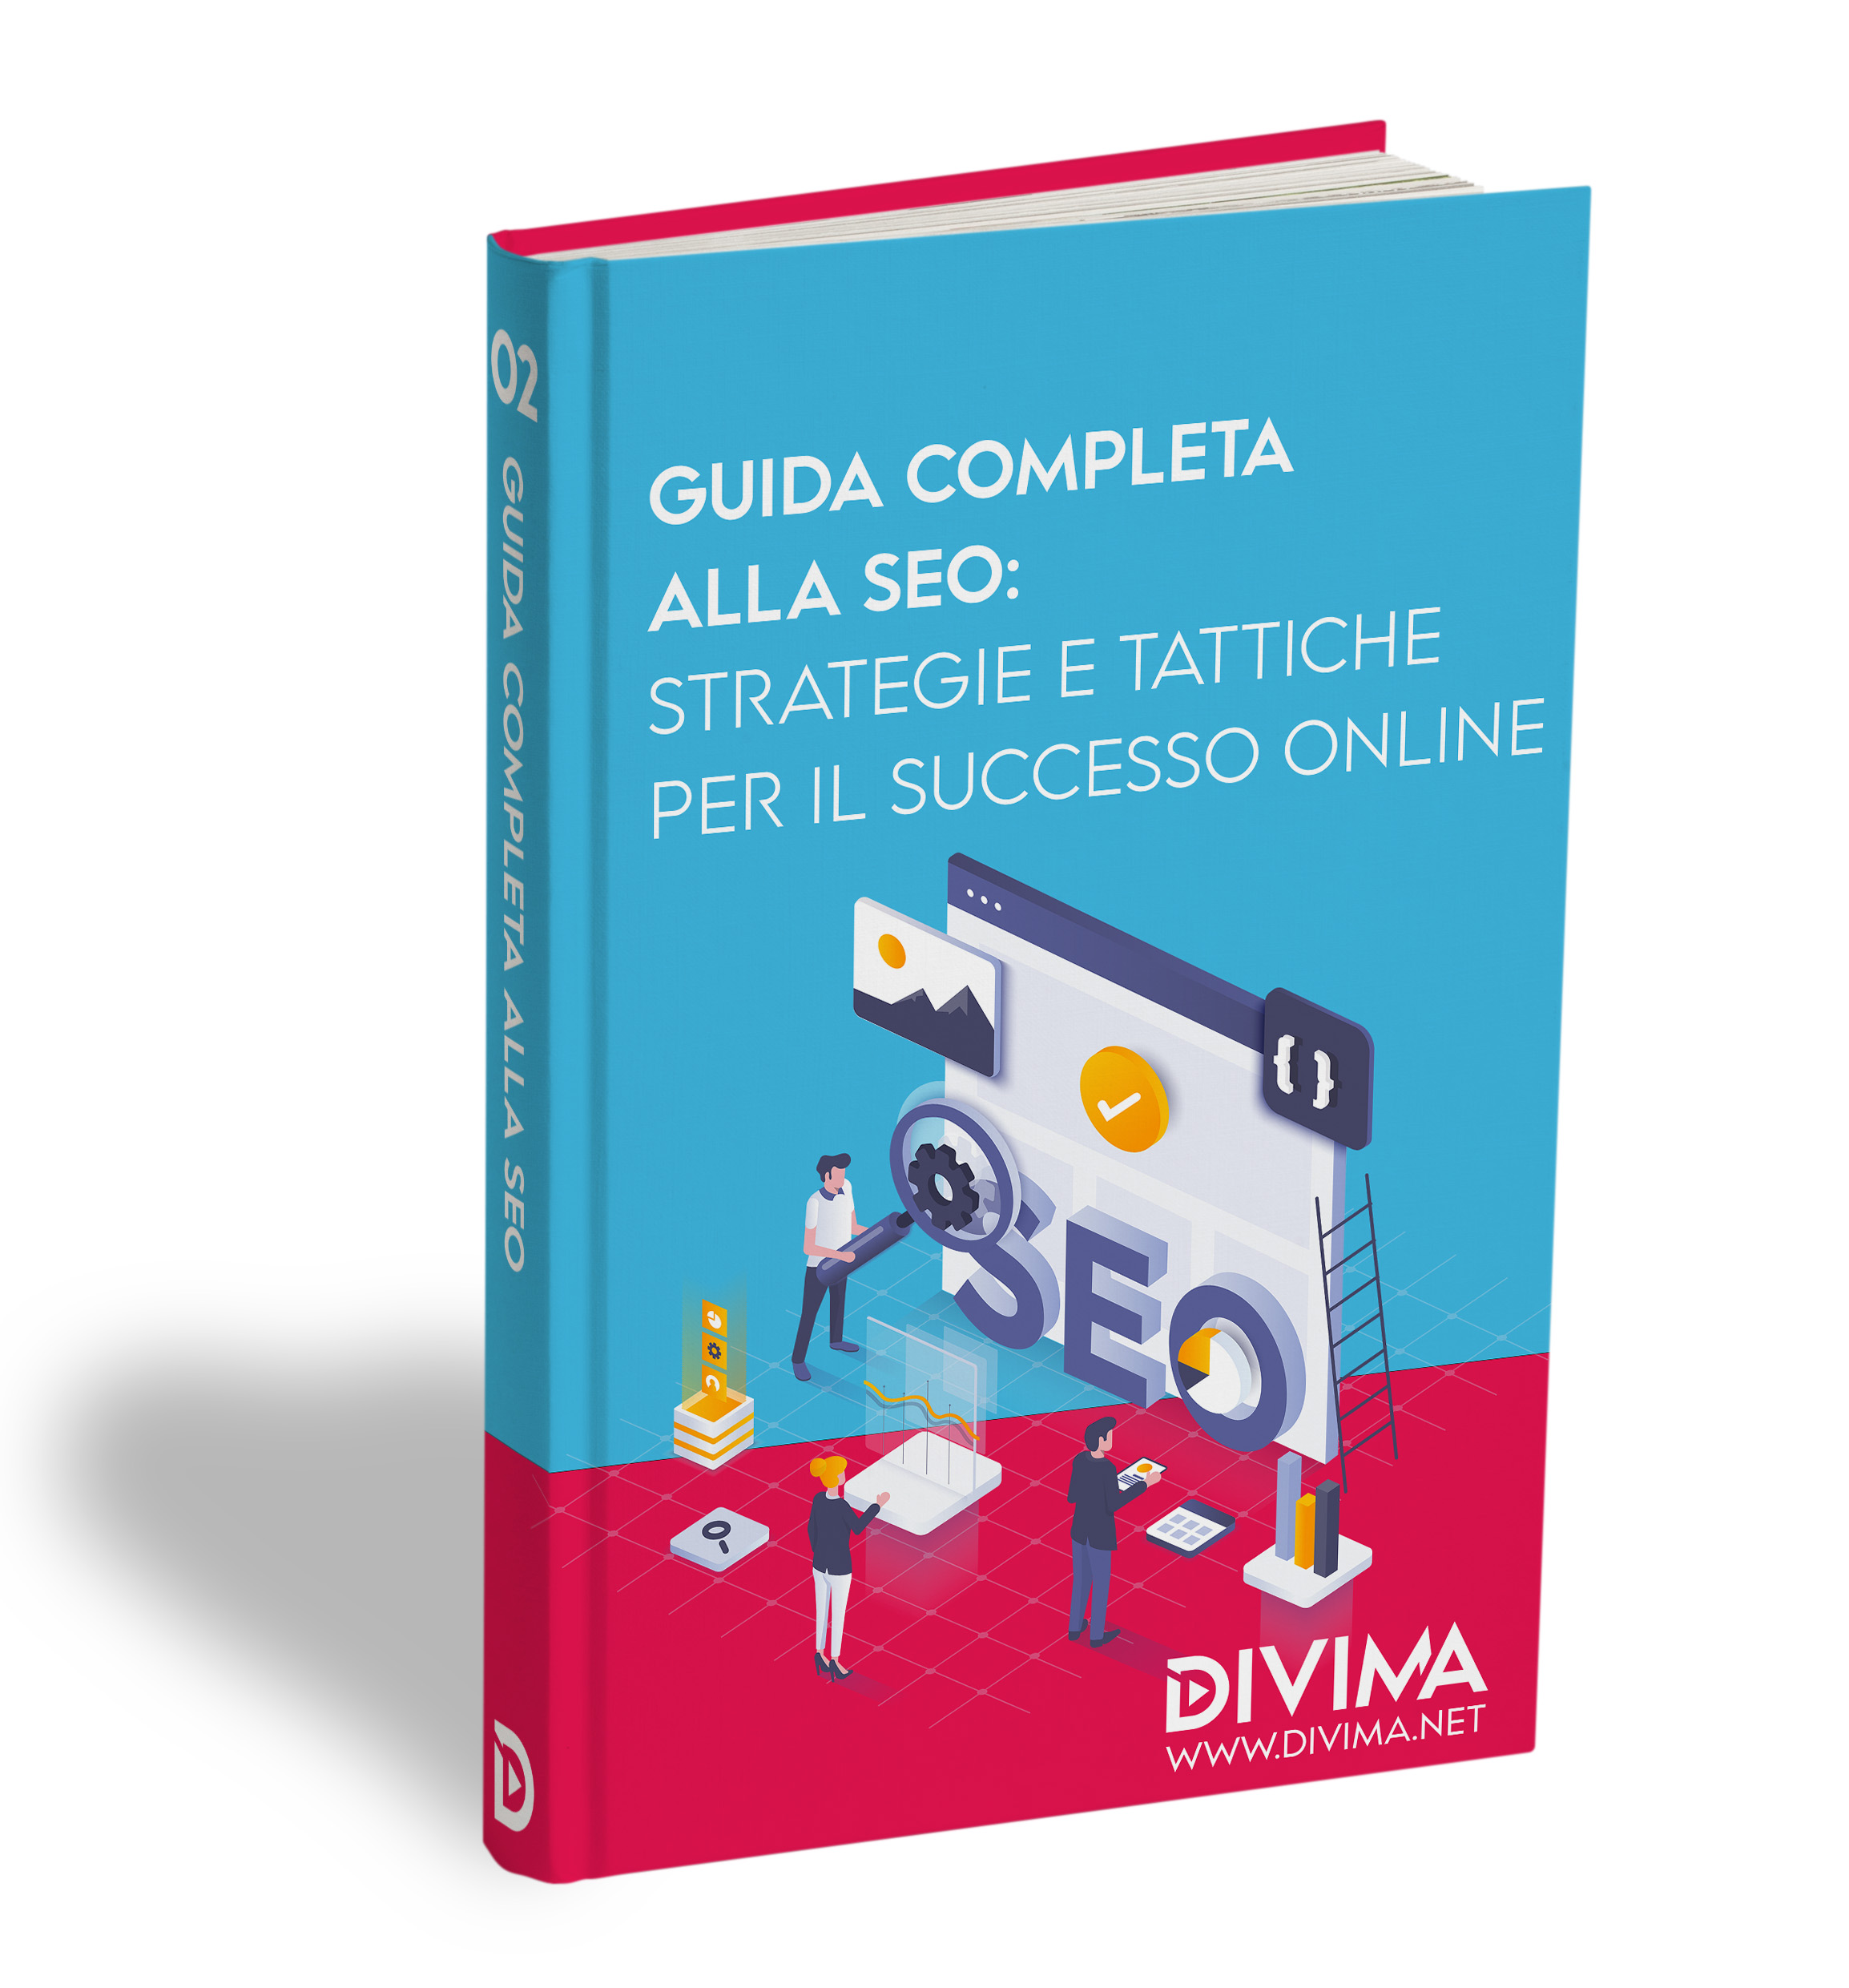 Guida Completa alla SEO: Strategie e Tattiche per il Successo Online